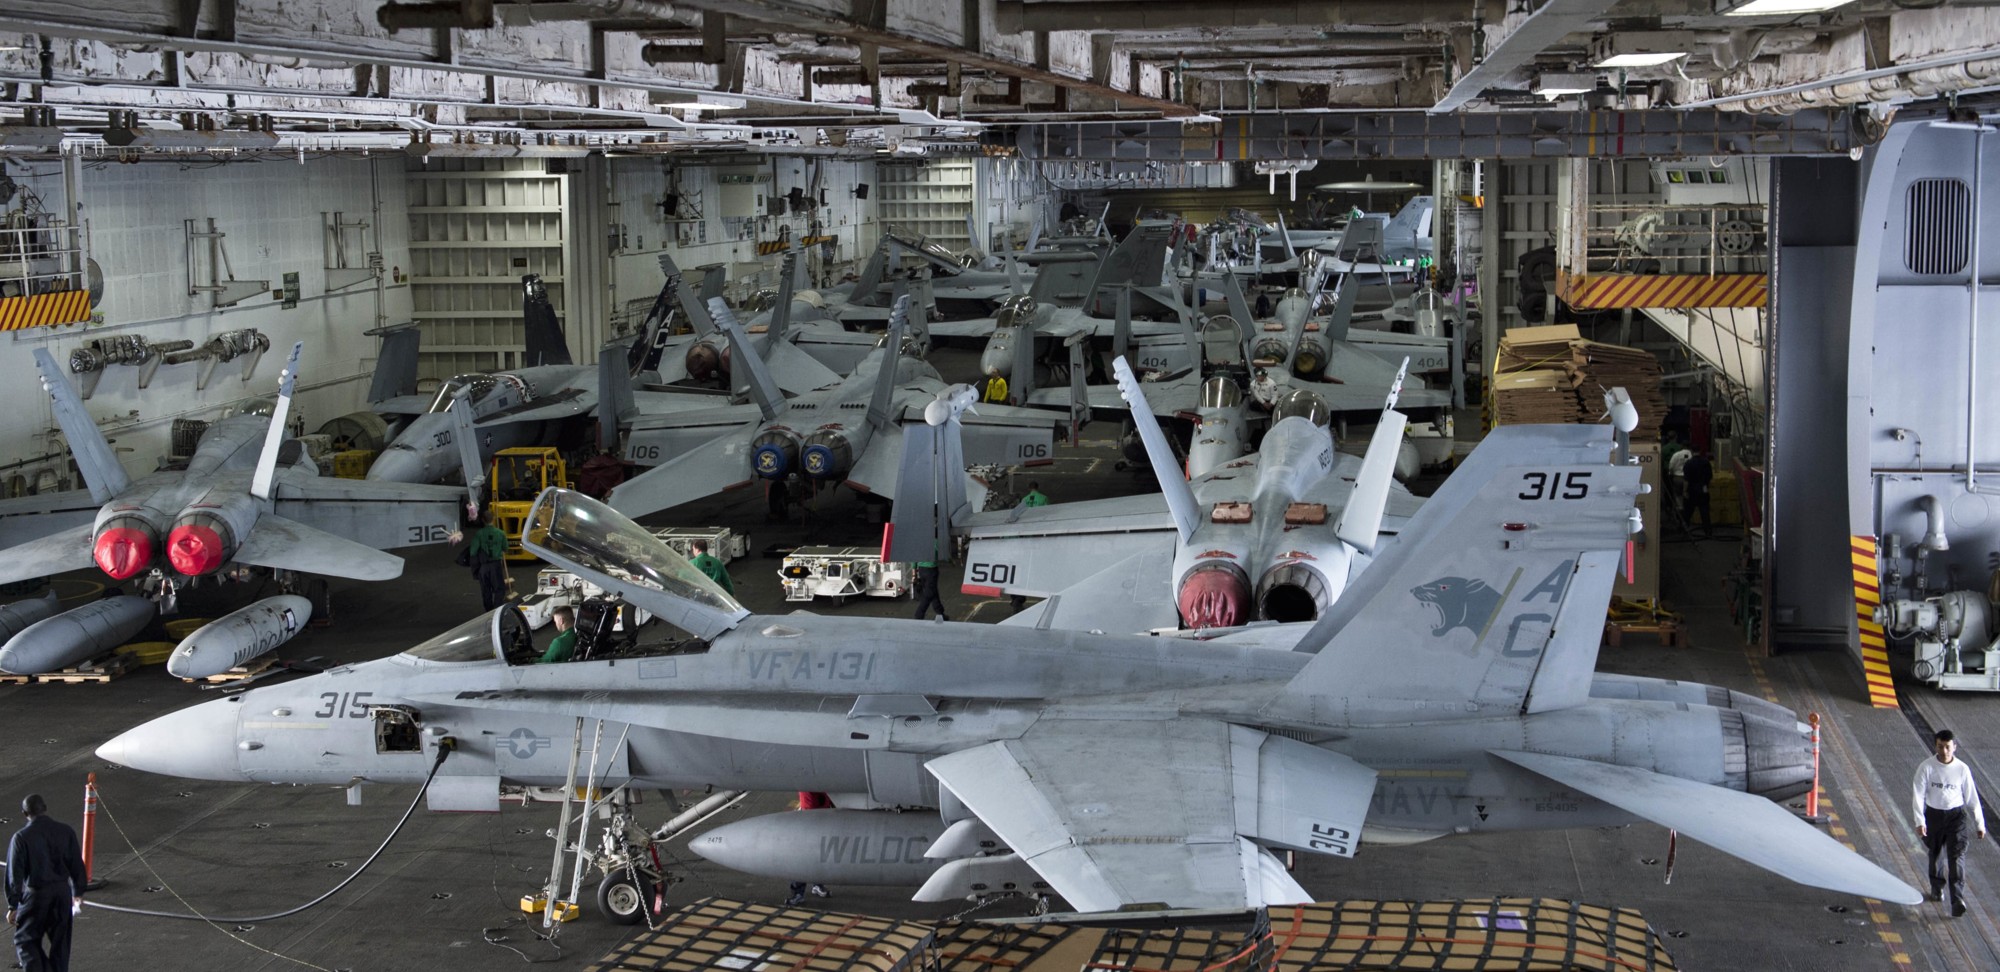 cvn-69 uss dwight d. eisenhower aircraft carrier air wing cvw-3 us navy 416 hangar